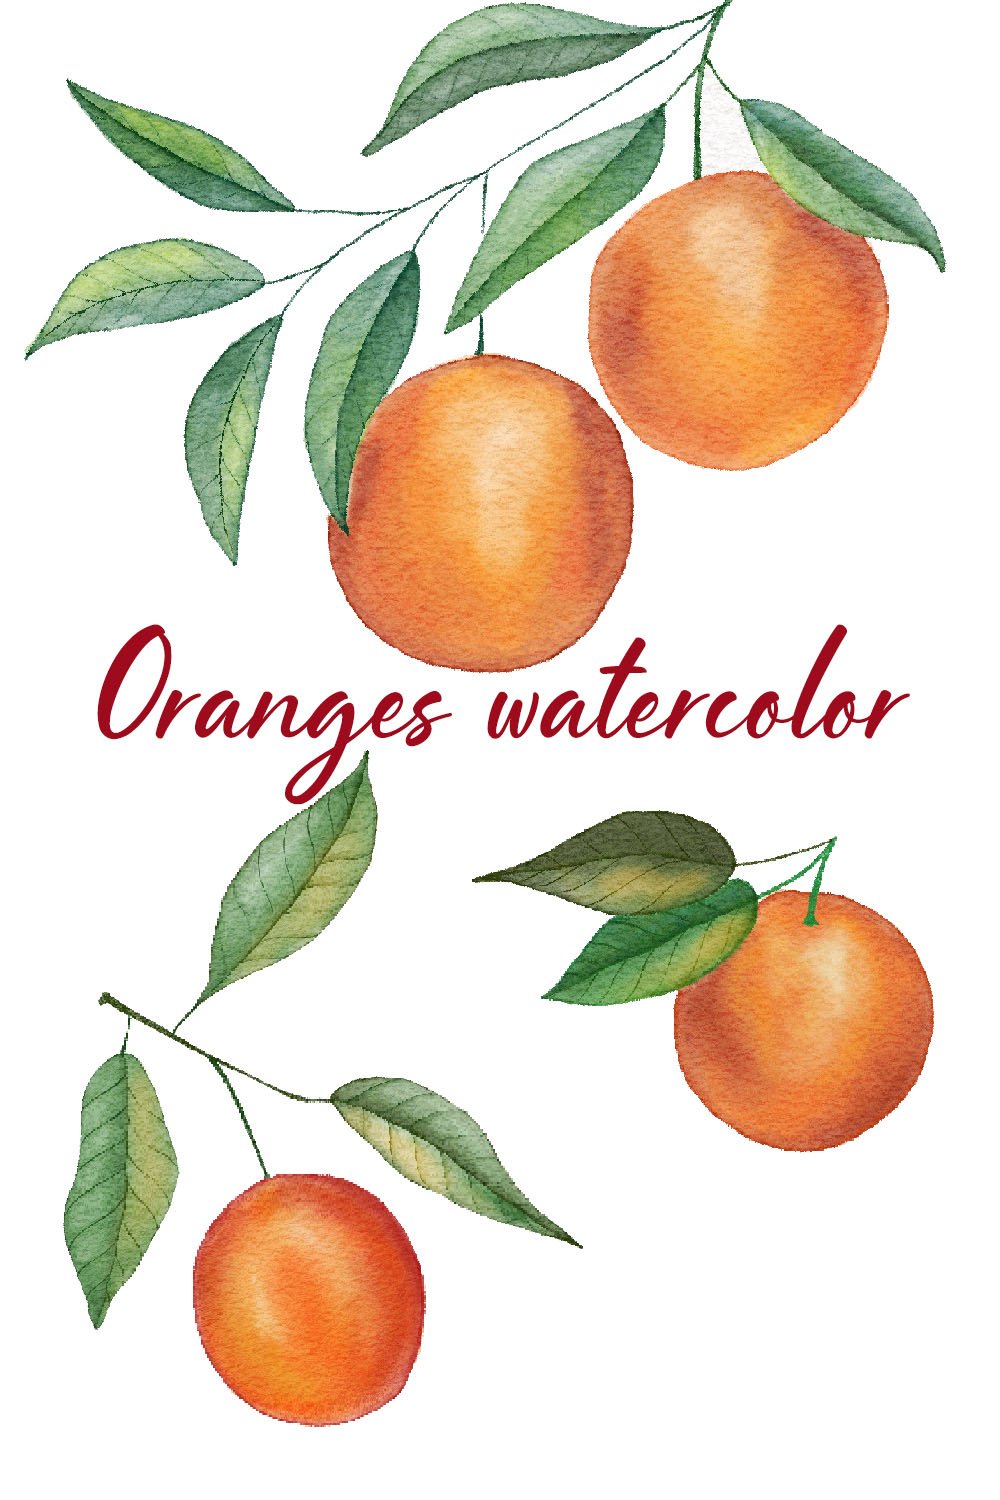 Watercolor oranges clip art pinterest preview image.